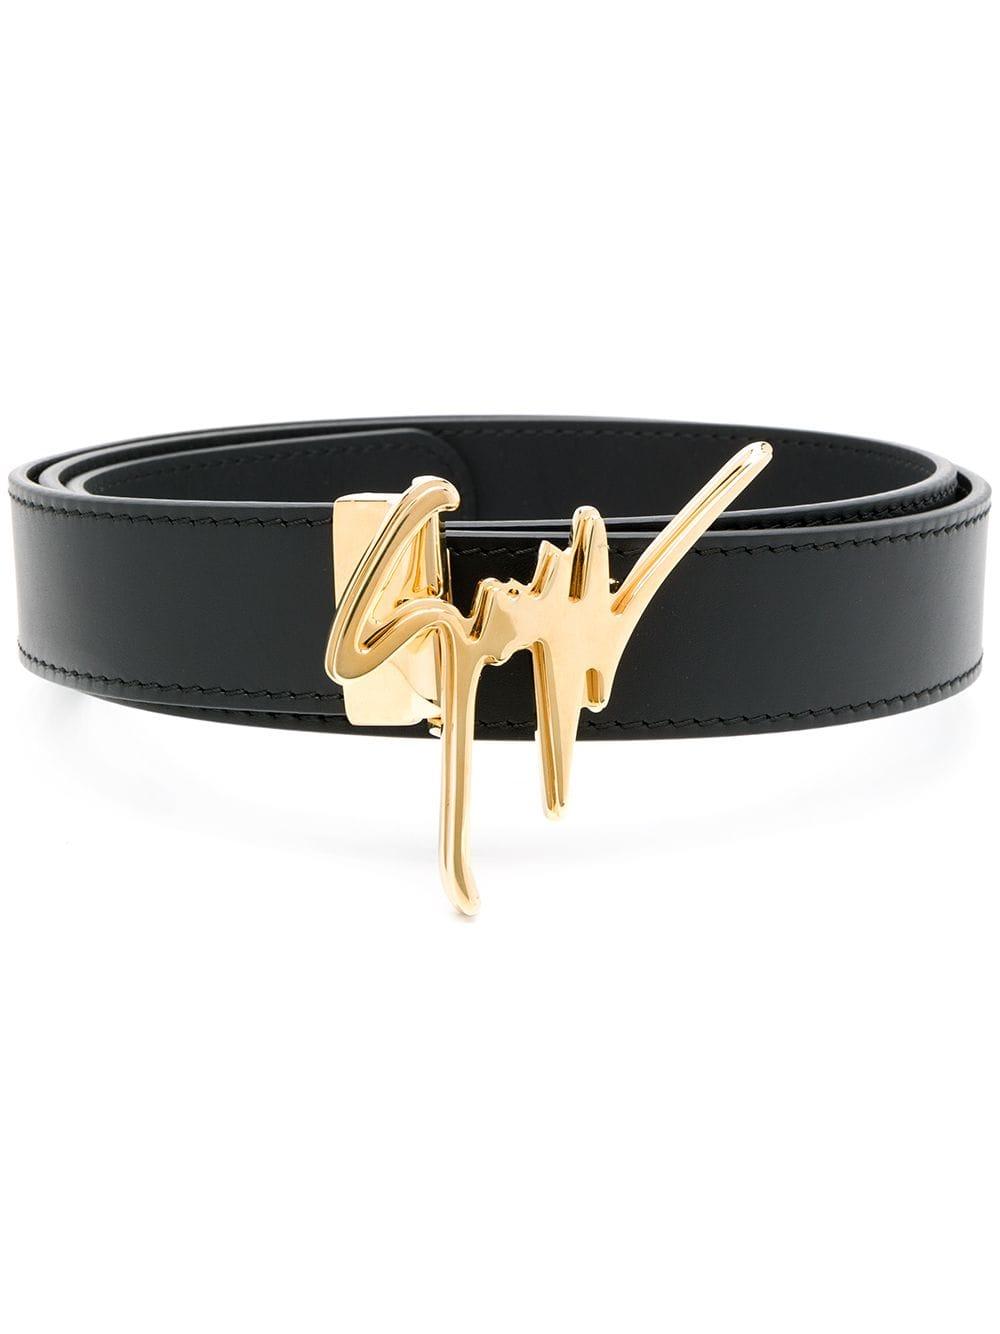 Giuseppe Zanotti Leather Gold Logo Plaque Belt in Black for Men - Lyst